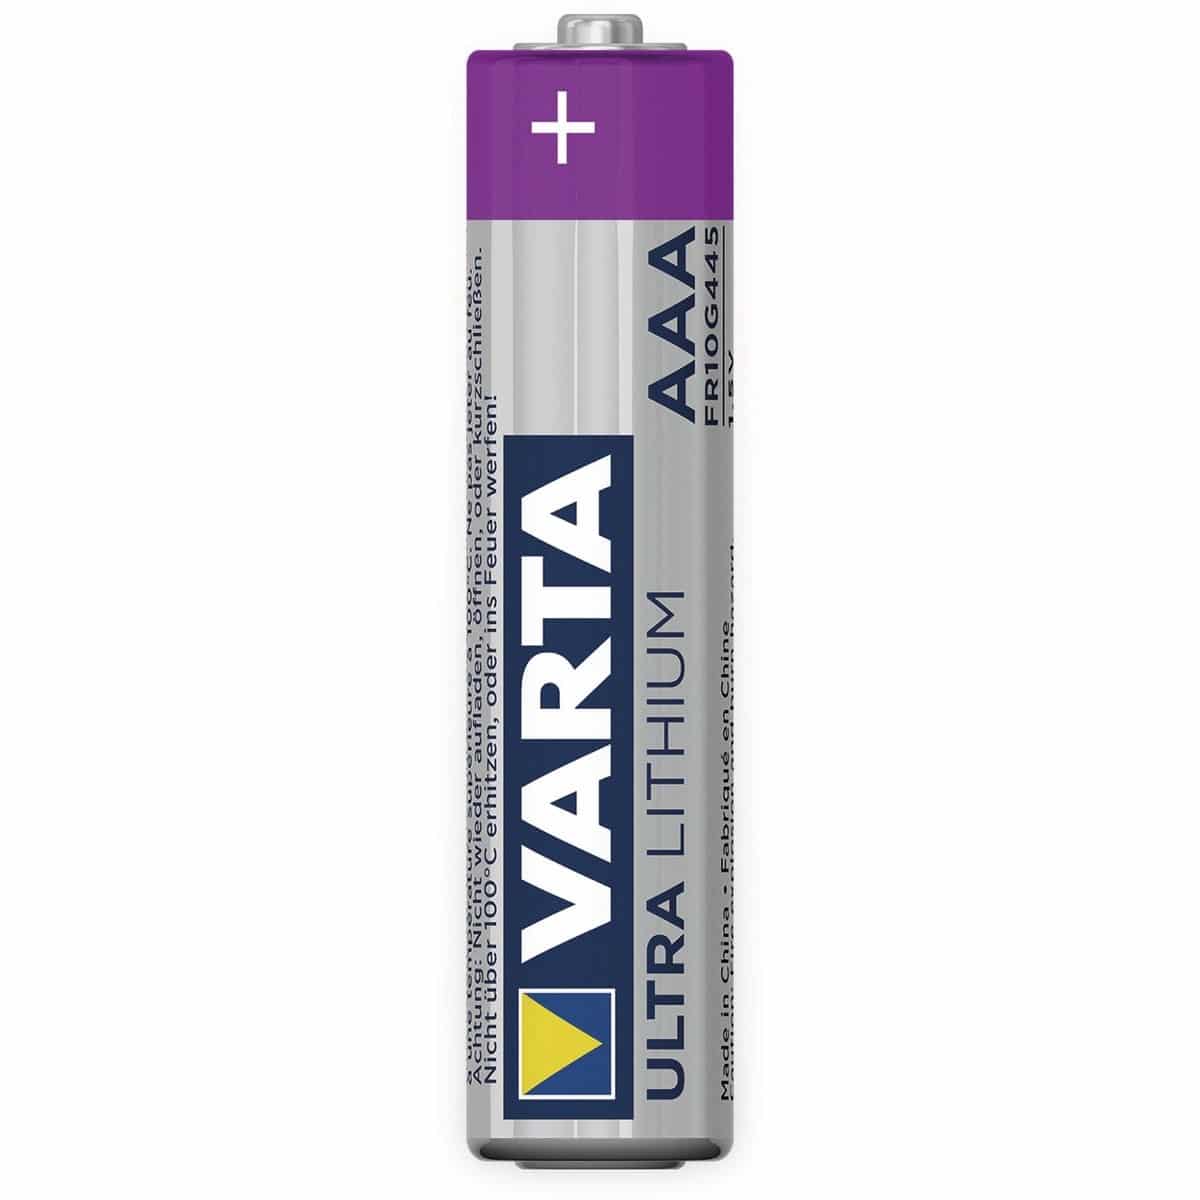 VARTA Micro-Lithiumbatterie ULTRA, 2 Stück